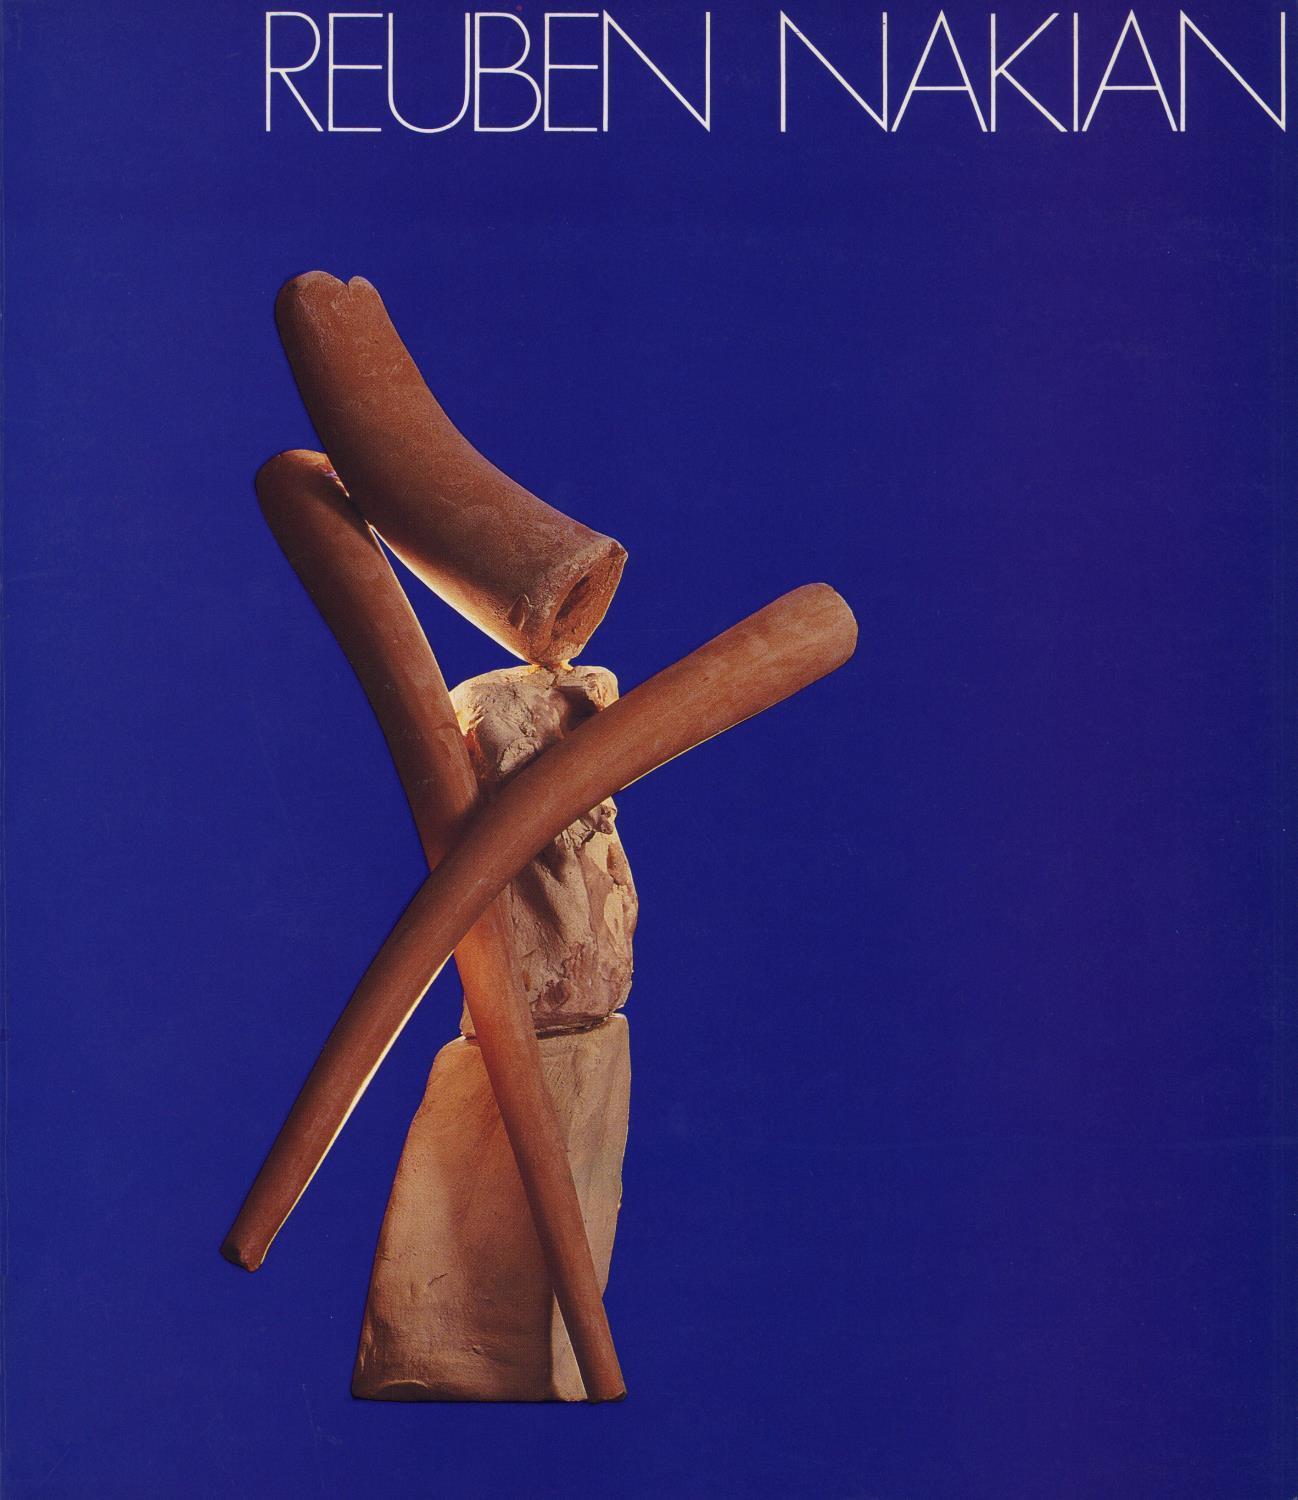 Reuben Nakian